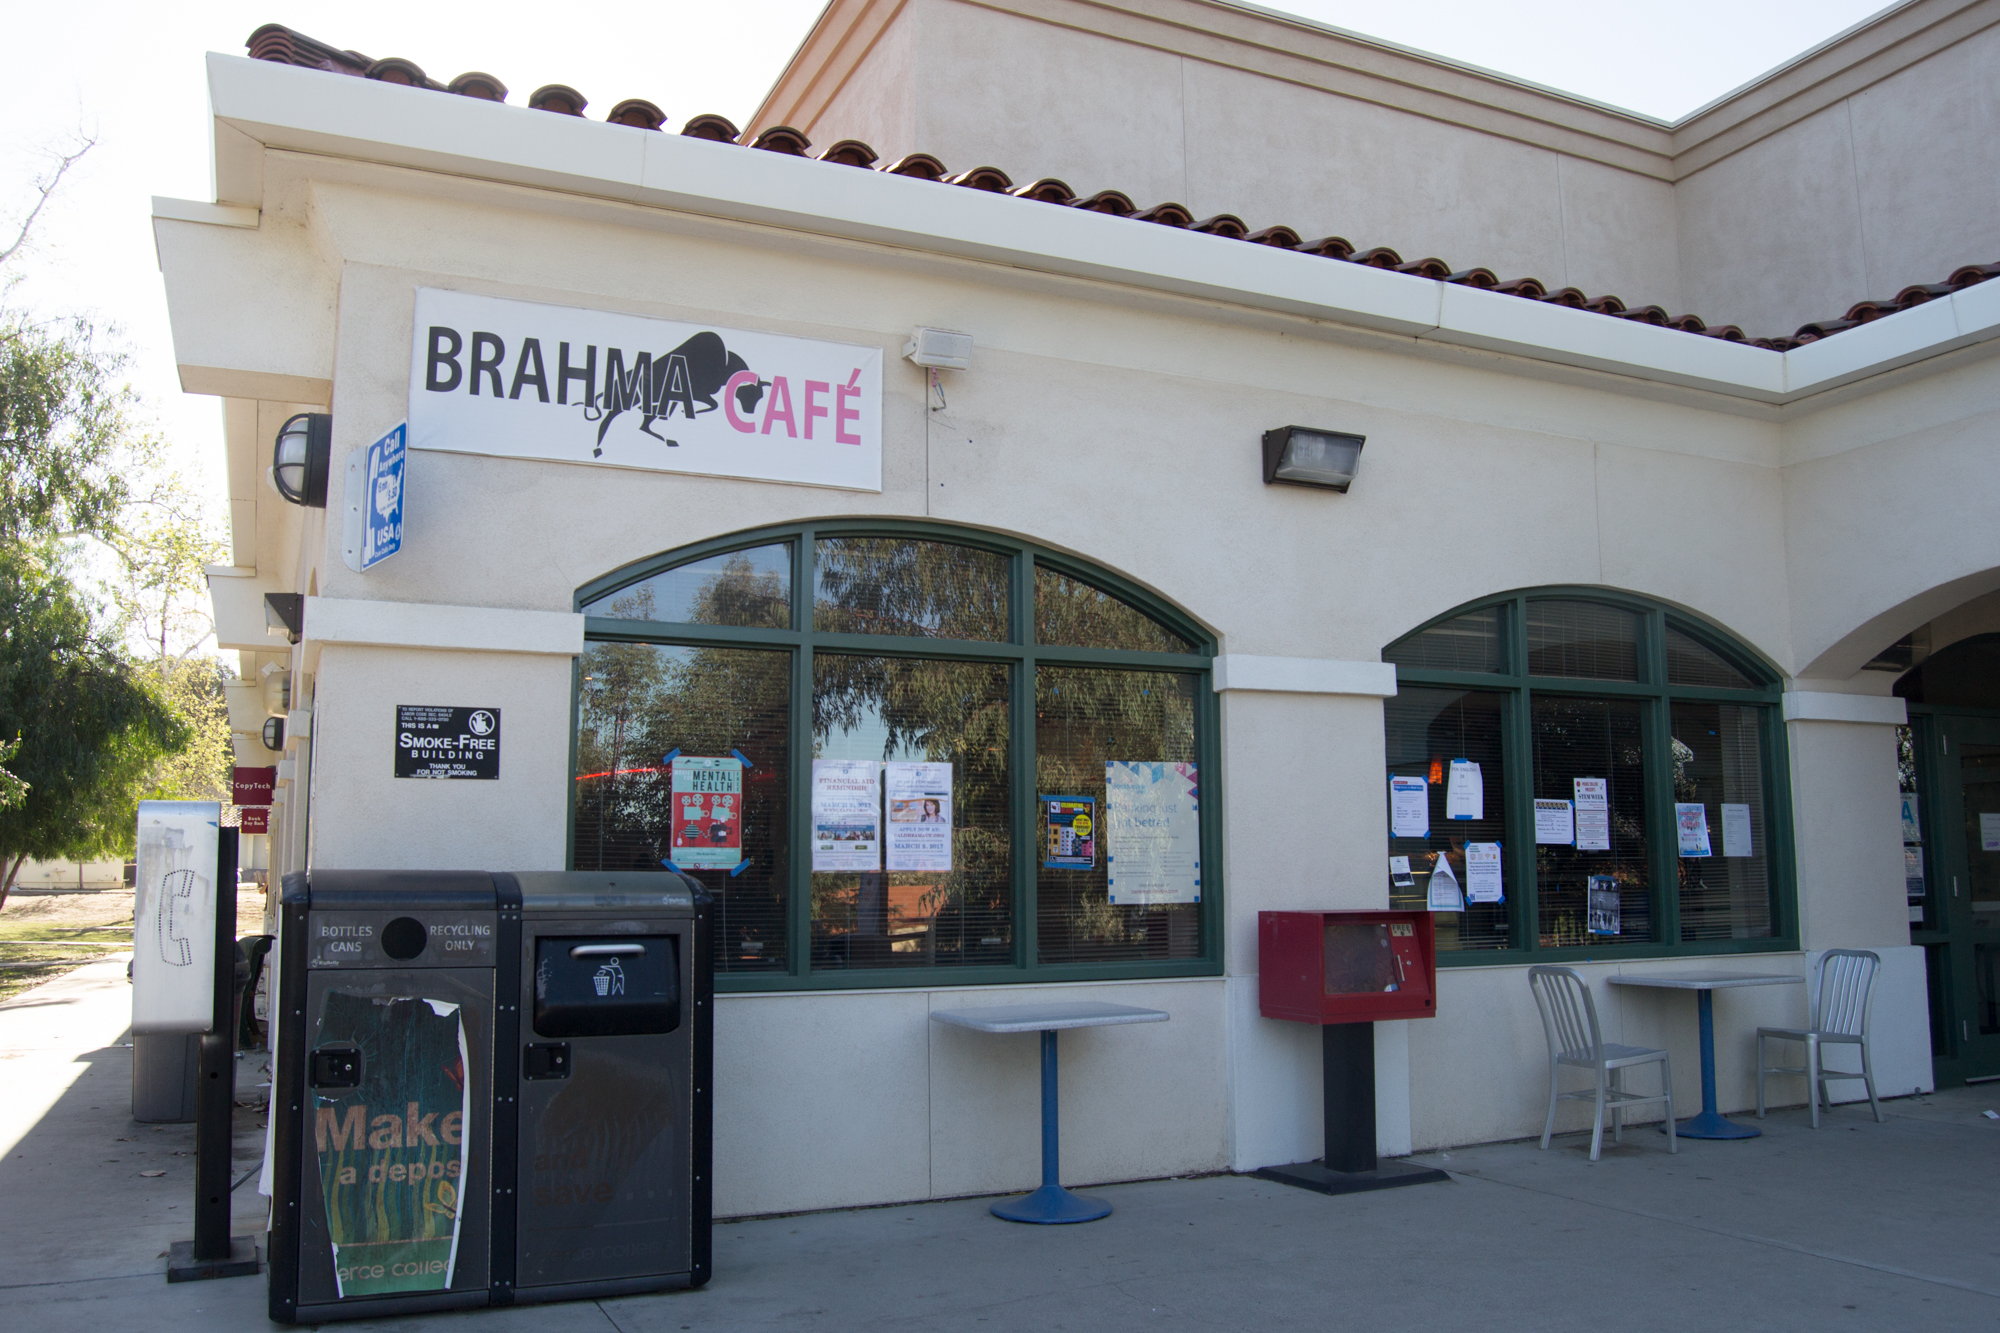 Brahma cafe waiting on promised upgrades